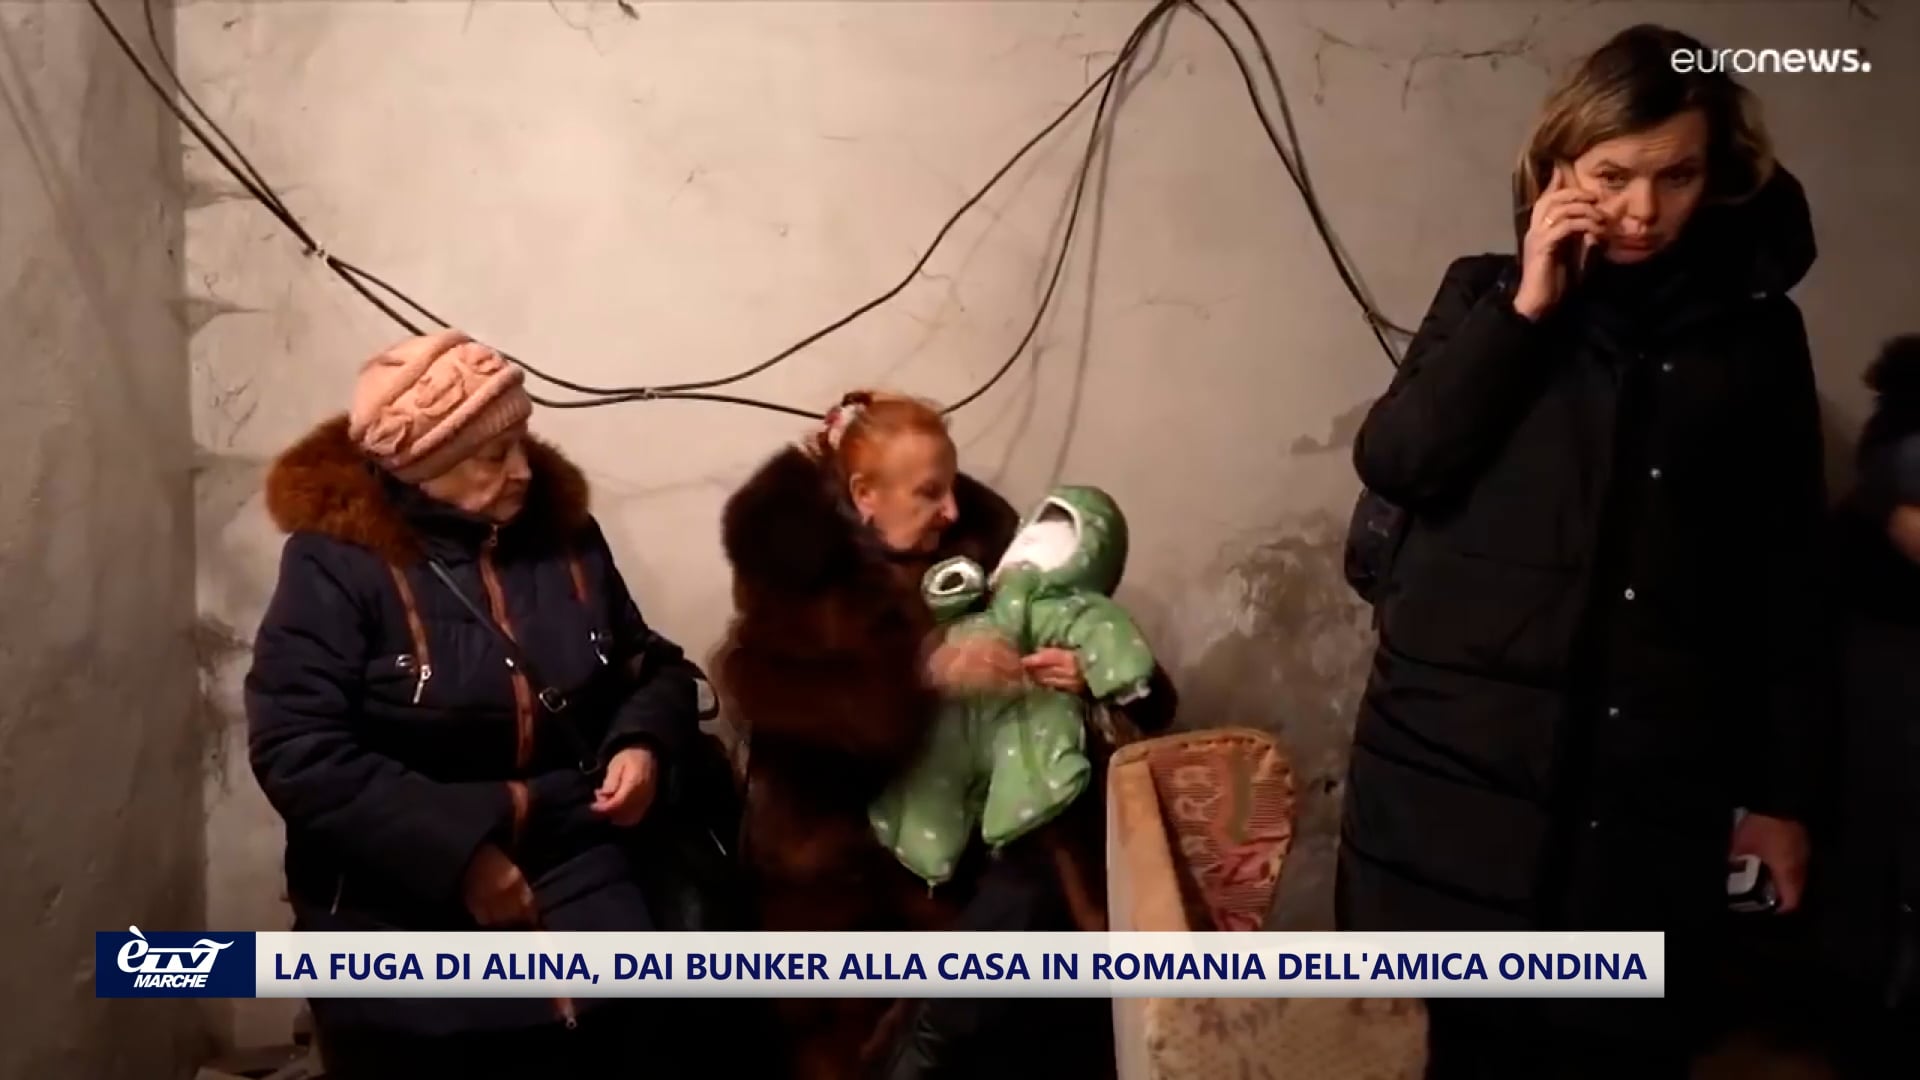 Ucraina. La fuga di Alina dai bunker alla casa in Romania dell'amica Ondina - VIDEO